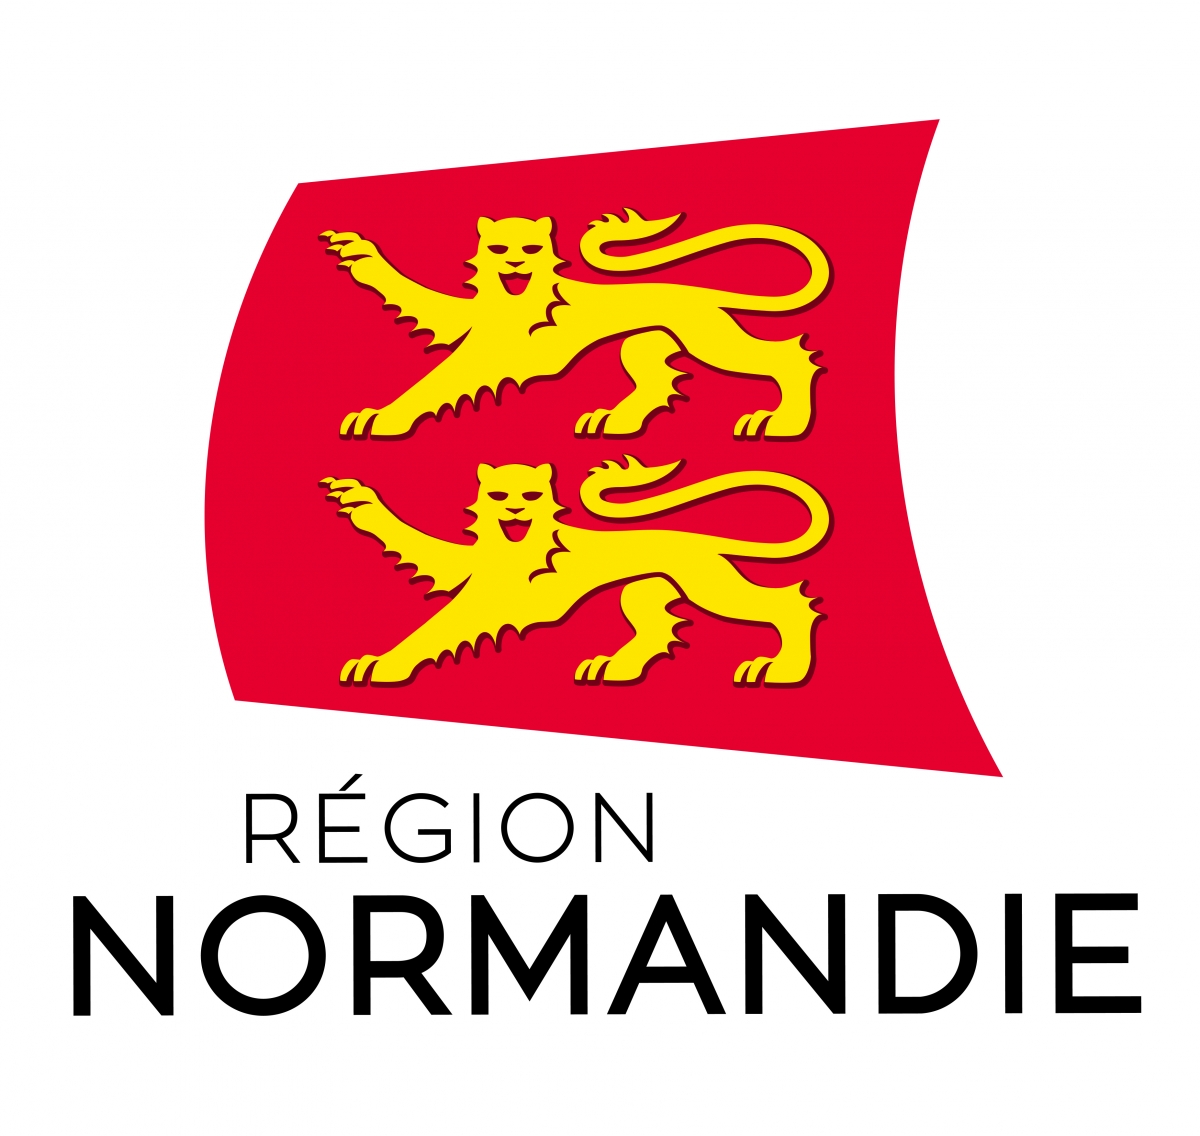 conseil régional normandie_madmagz_education